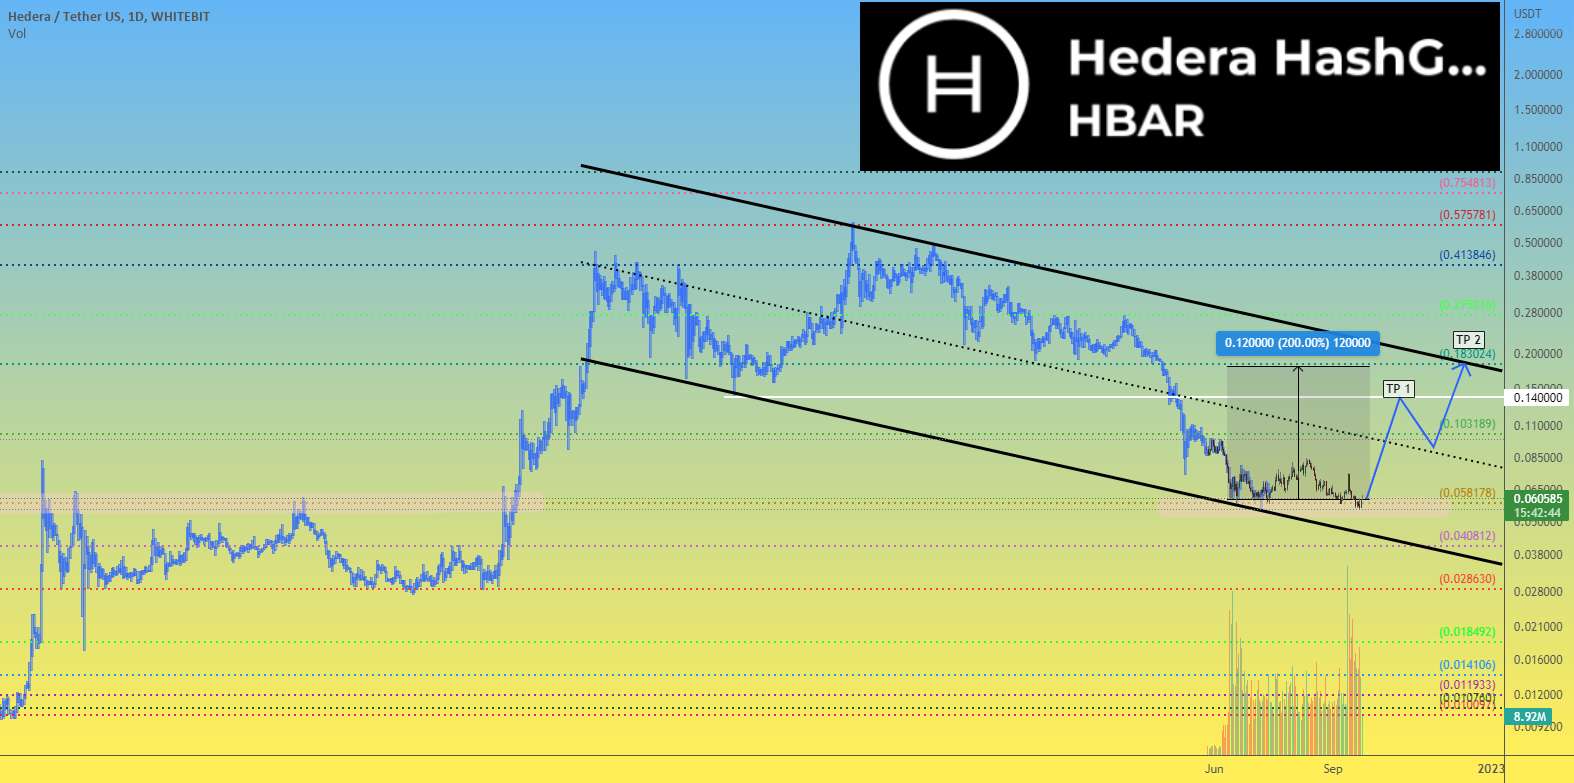  تحلیل هدرا هشگراف - قیمت HEDERA HBAR می تواند +200٪ رشد کند